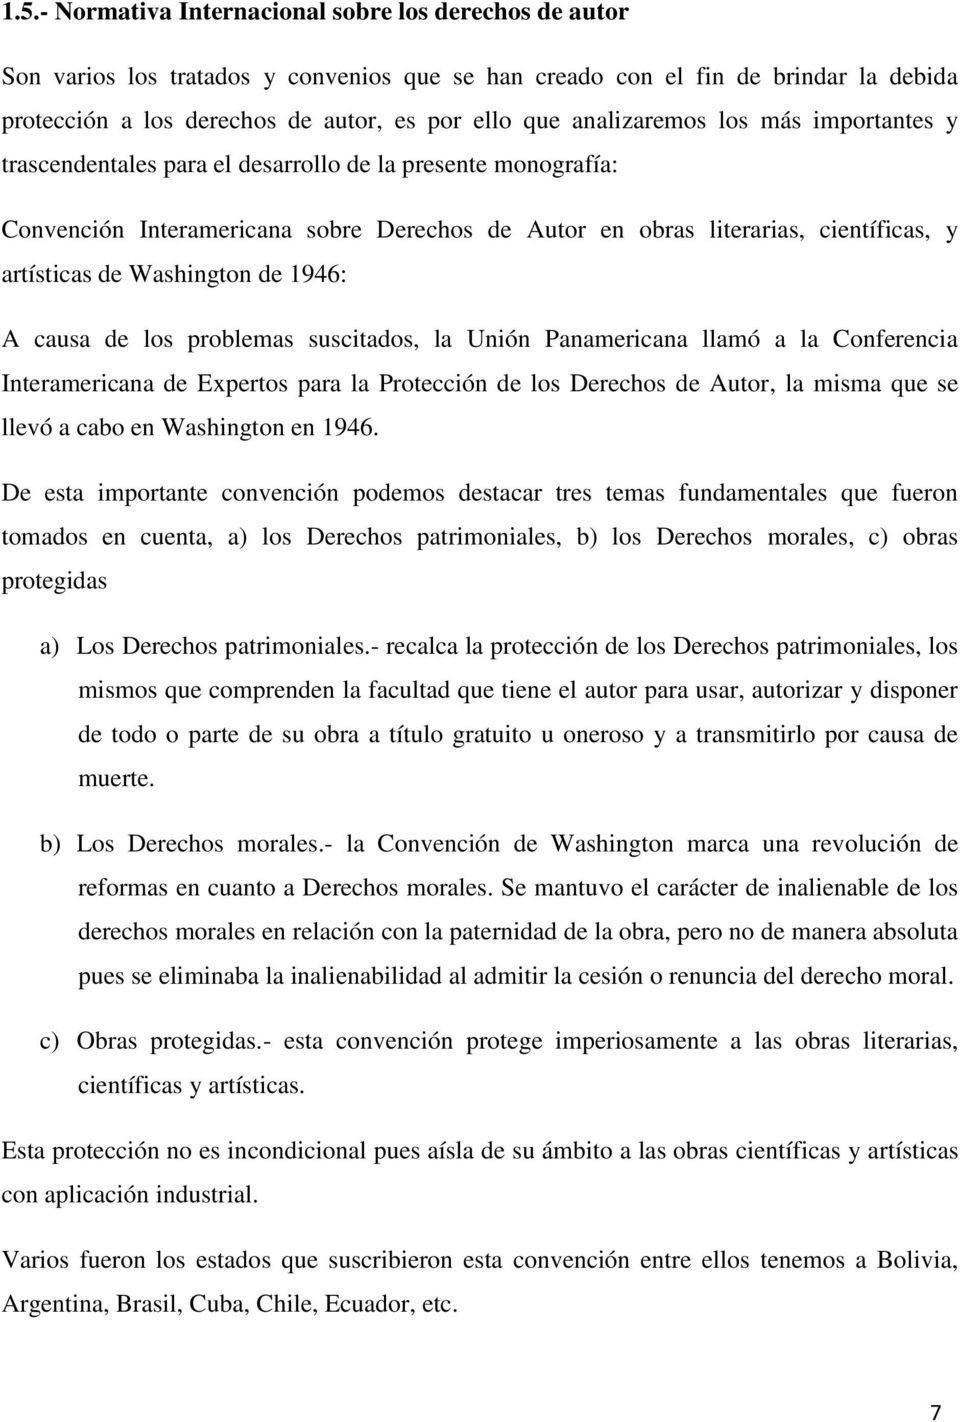 Washington de 1946: A causa de los problemas suscitados, la Unión Panamericana llamó a la Conferencia Interamericana de Expertos para la Protección de los Derechos de Autor, la misma que se llevó a